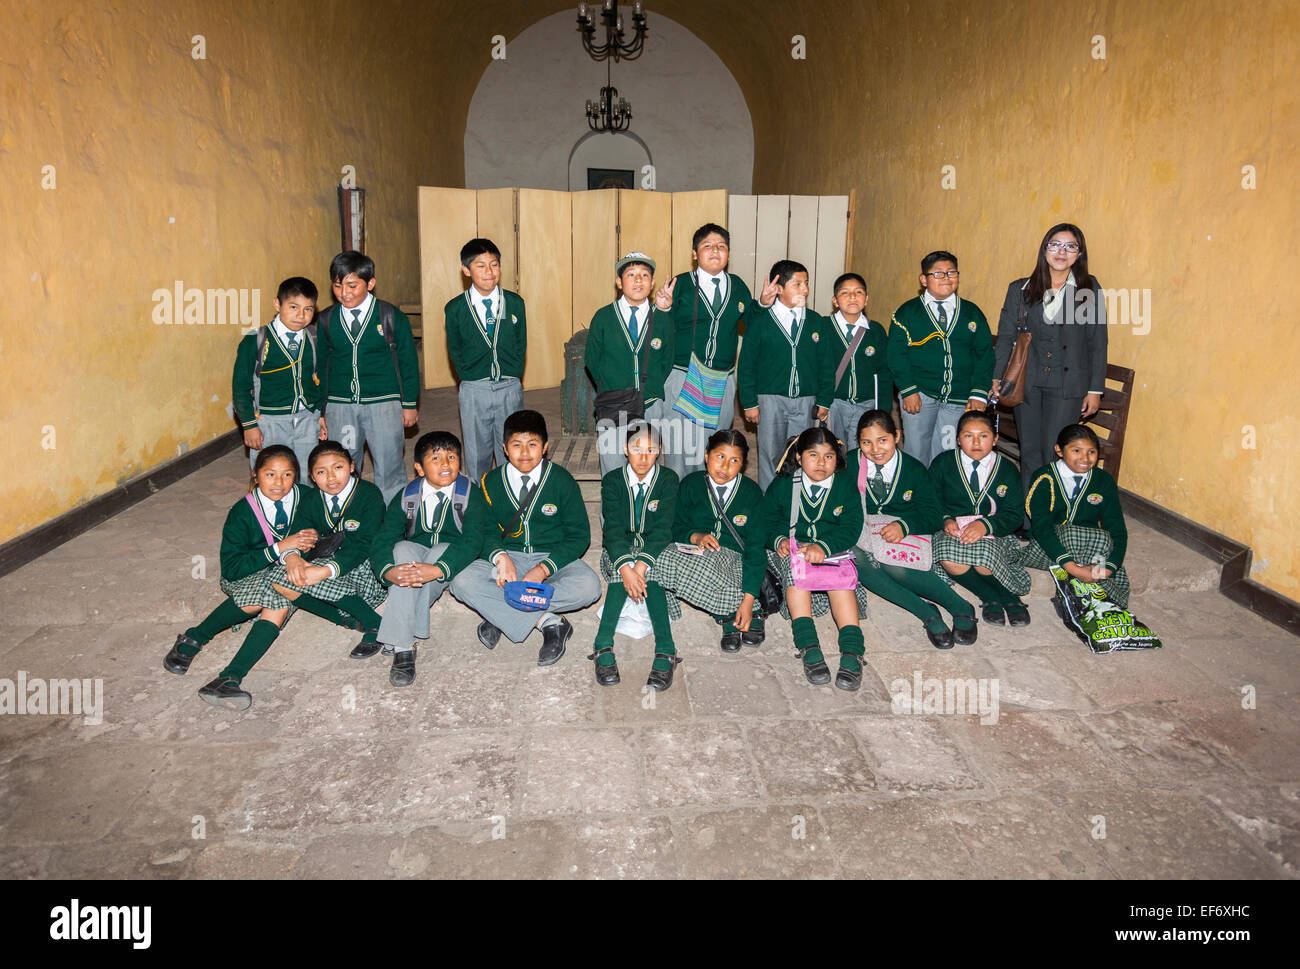 Klasse der lokalen Peruanischen Schüler in Schuluniform für eine Klasse Gruppe Bild genießen den Besuch Kloster Santa Catalina, Arequipa, Peru posing Stockfoto